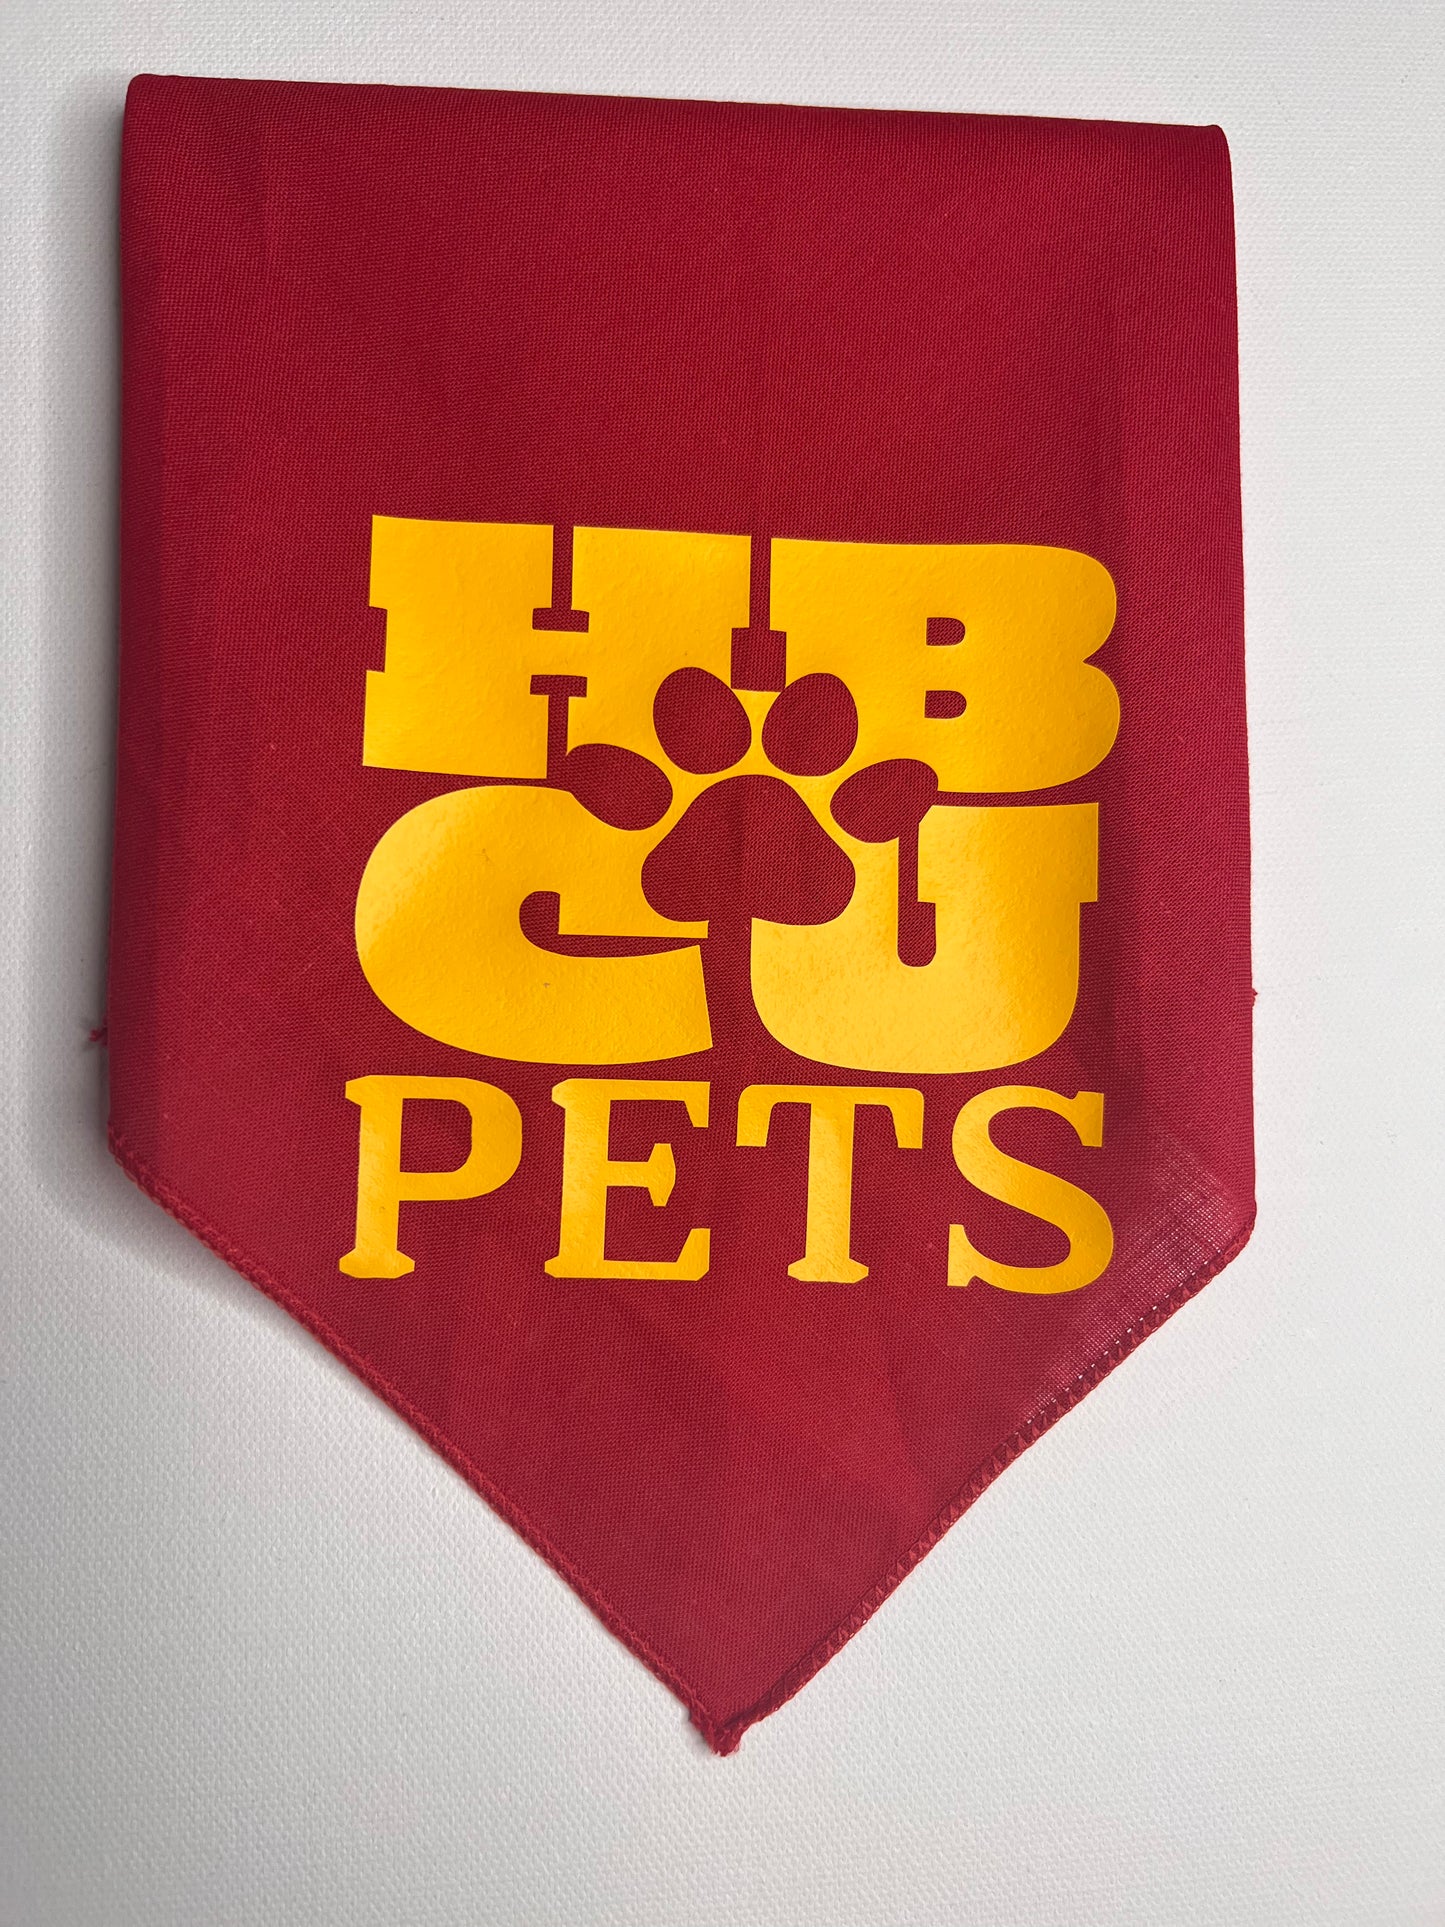 HBCU Pets Scarf Bandana- HBCU & Greek Colorways